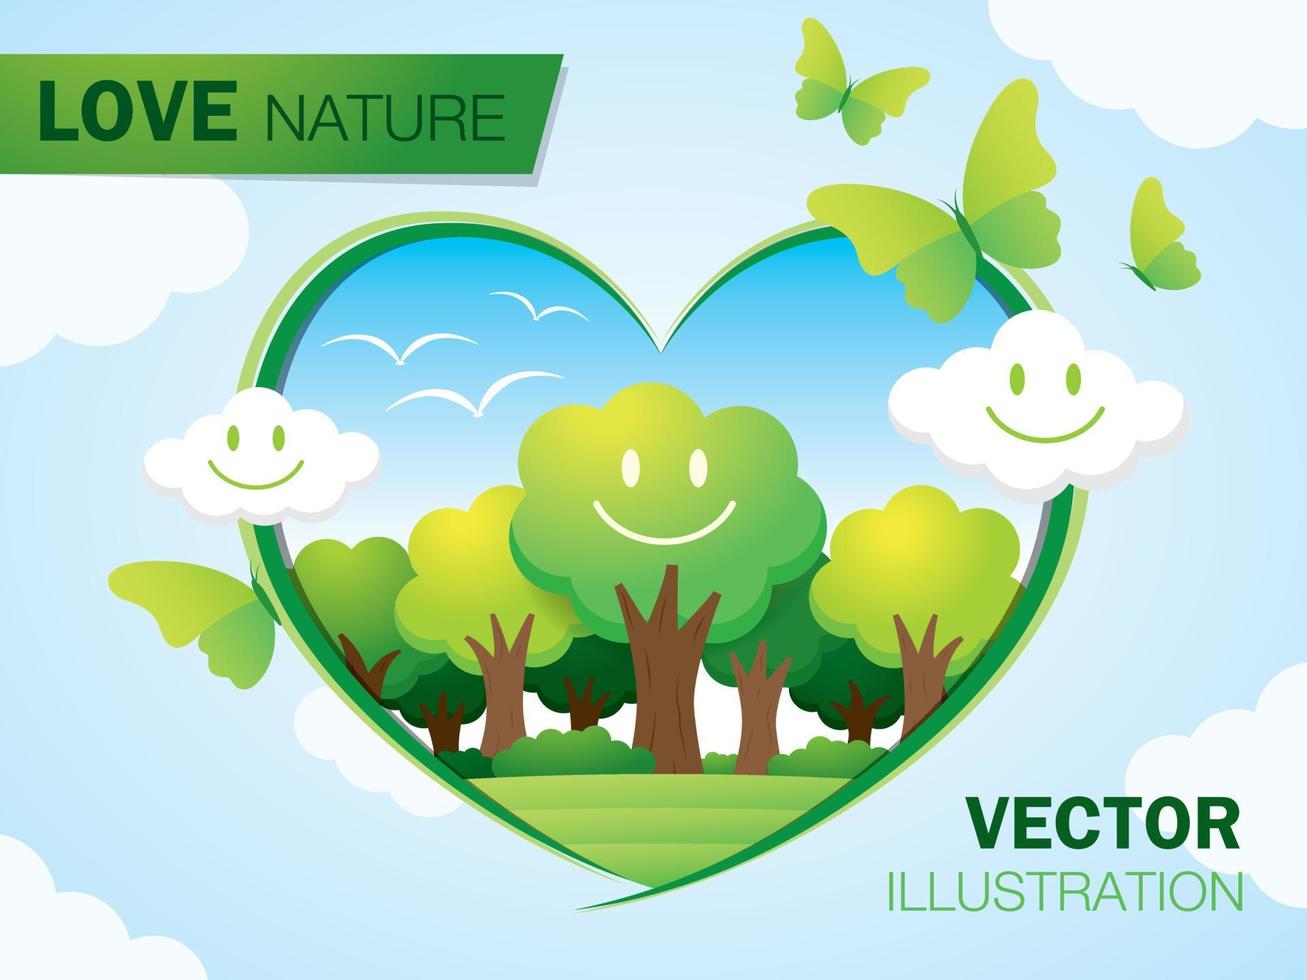 hou van natuur illustratie vector. smile face boom en groene omgeving is in hartvorm en er zijn smile face cloud en vlinder was versierd rond het hart op blauwe hemelachtergrond. vector